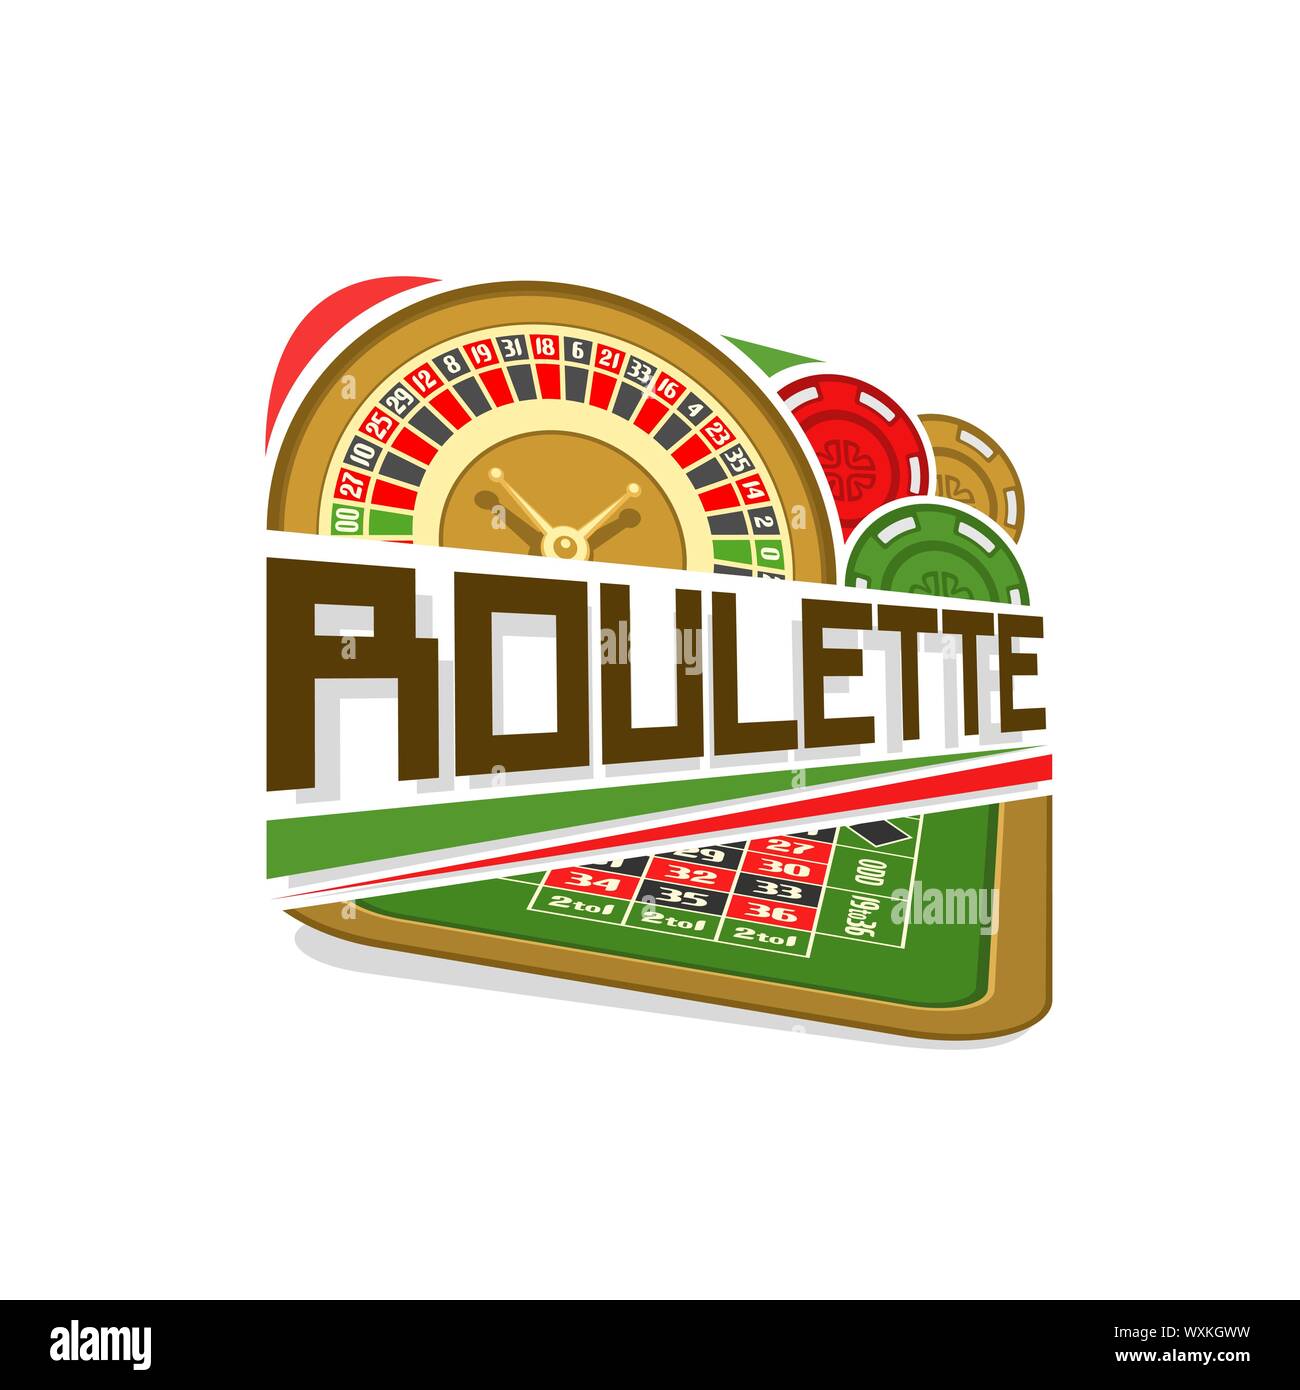 Il logo del vettore per la Roulette gamble: ruota di american roulette con doppio zero, chip colorati, testo - sopra roulette tavolo da gioco per gioco d'azzardo. Illustrazione Vettoriale